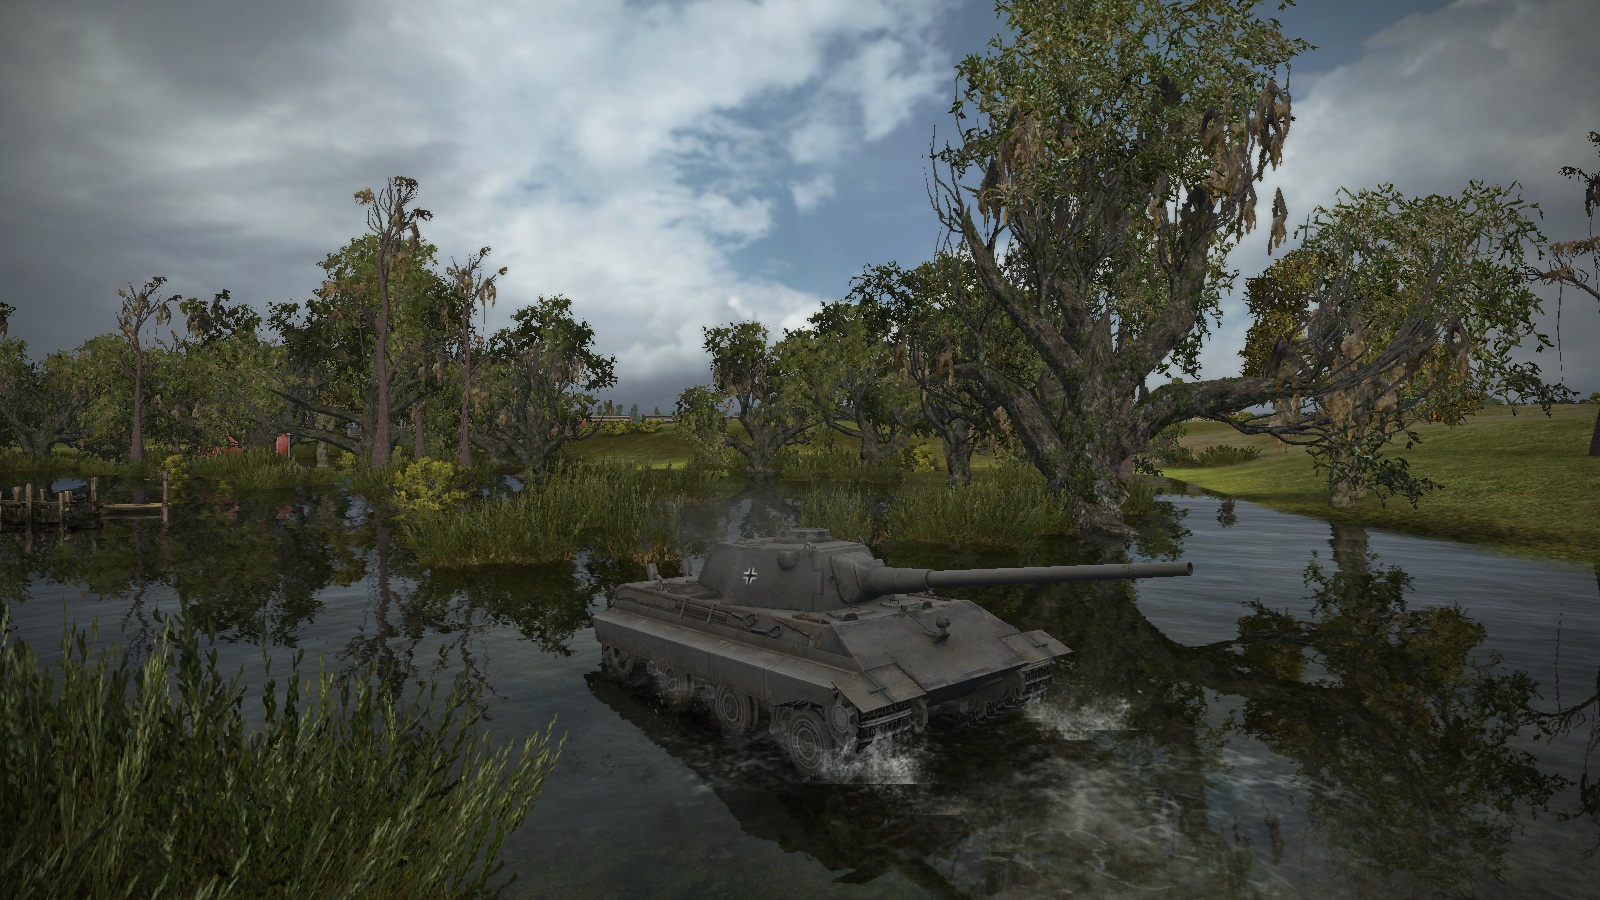 E-50 Ausf M